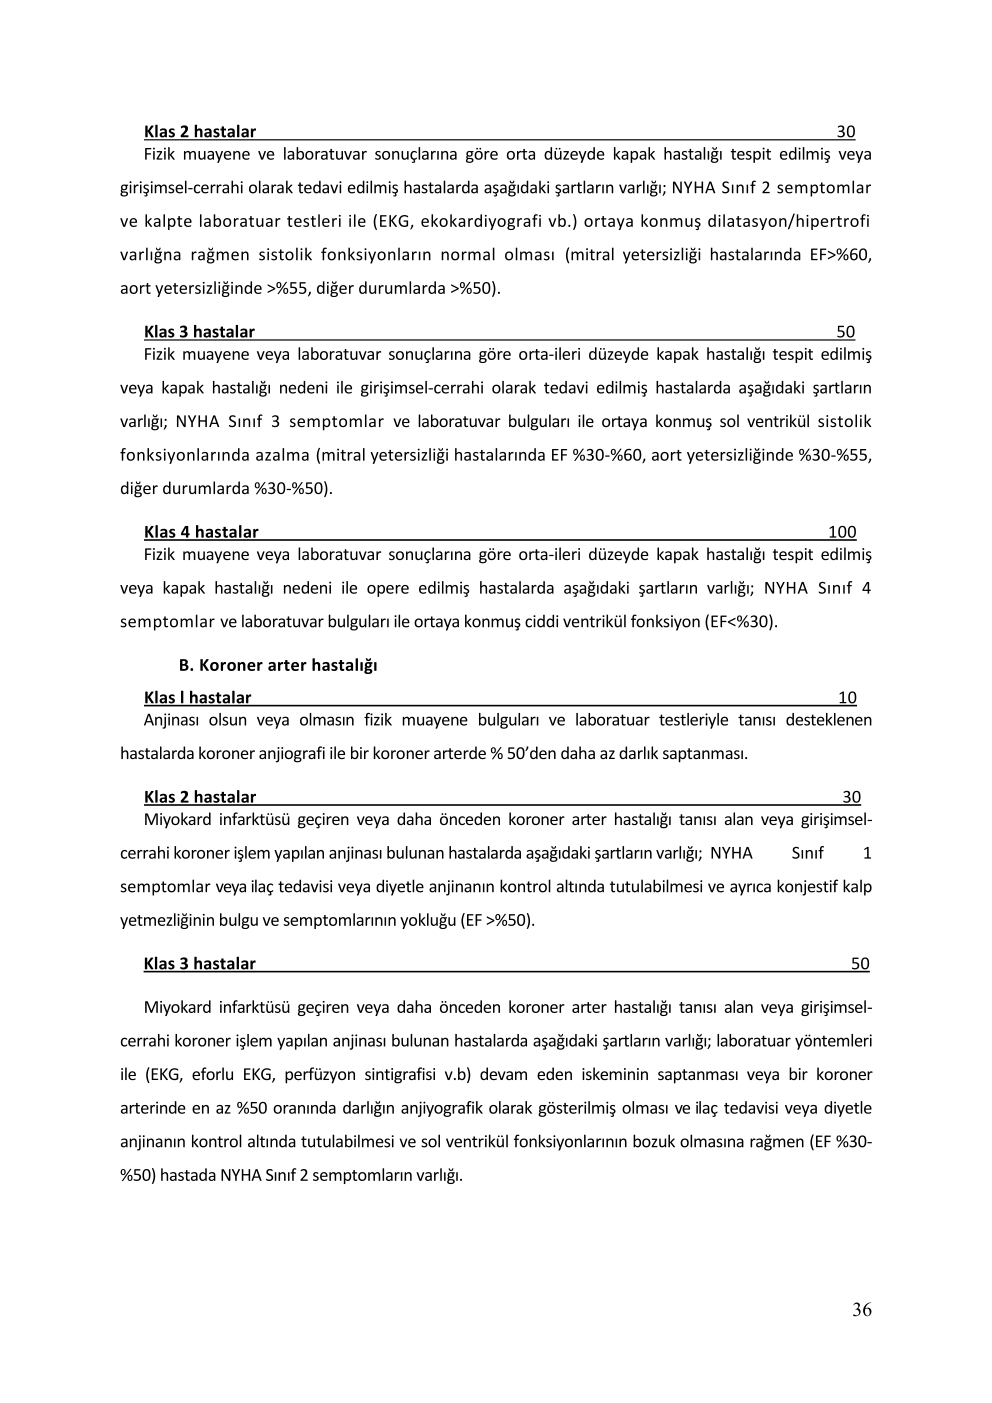 kalp sağlığı raporu 4 şey pdf dosyası